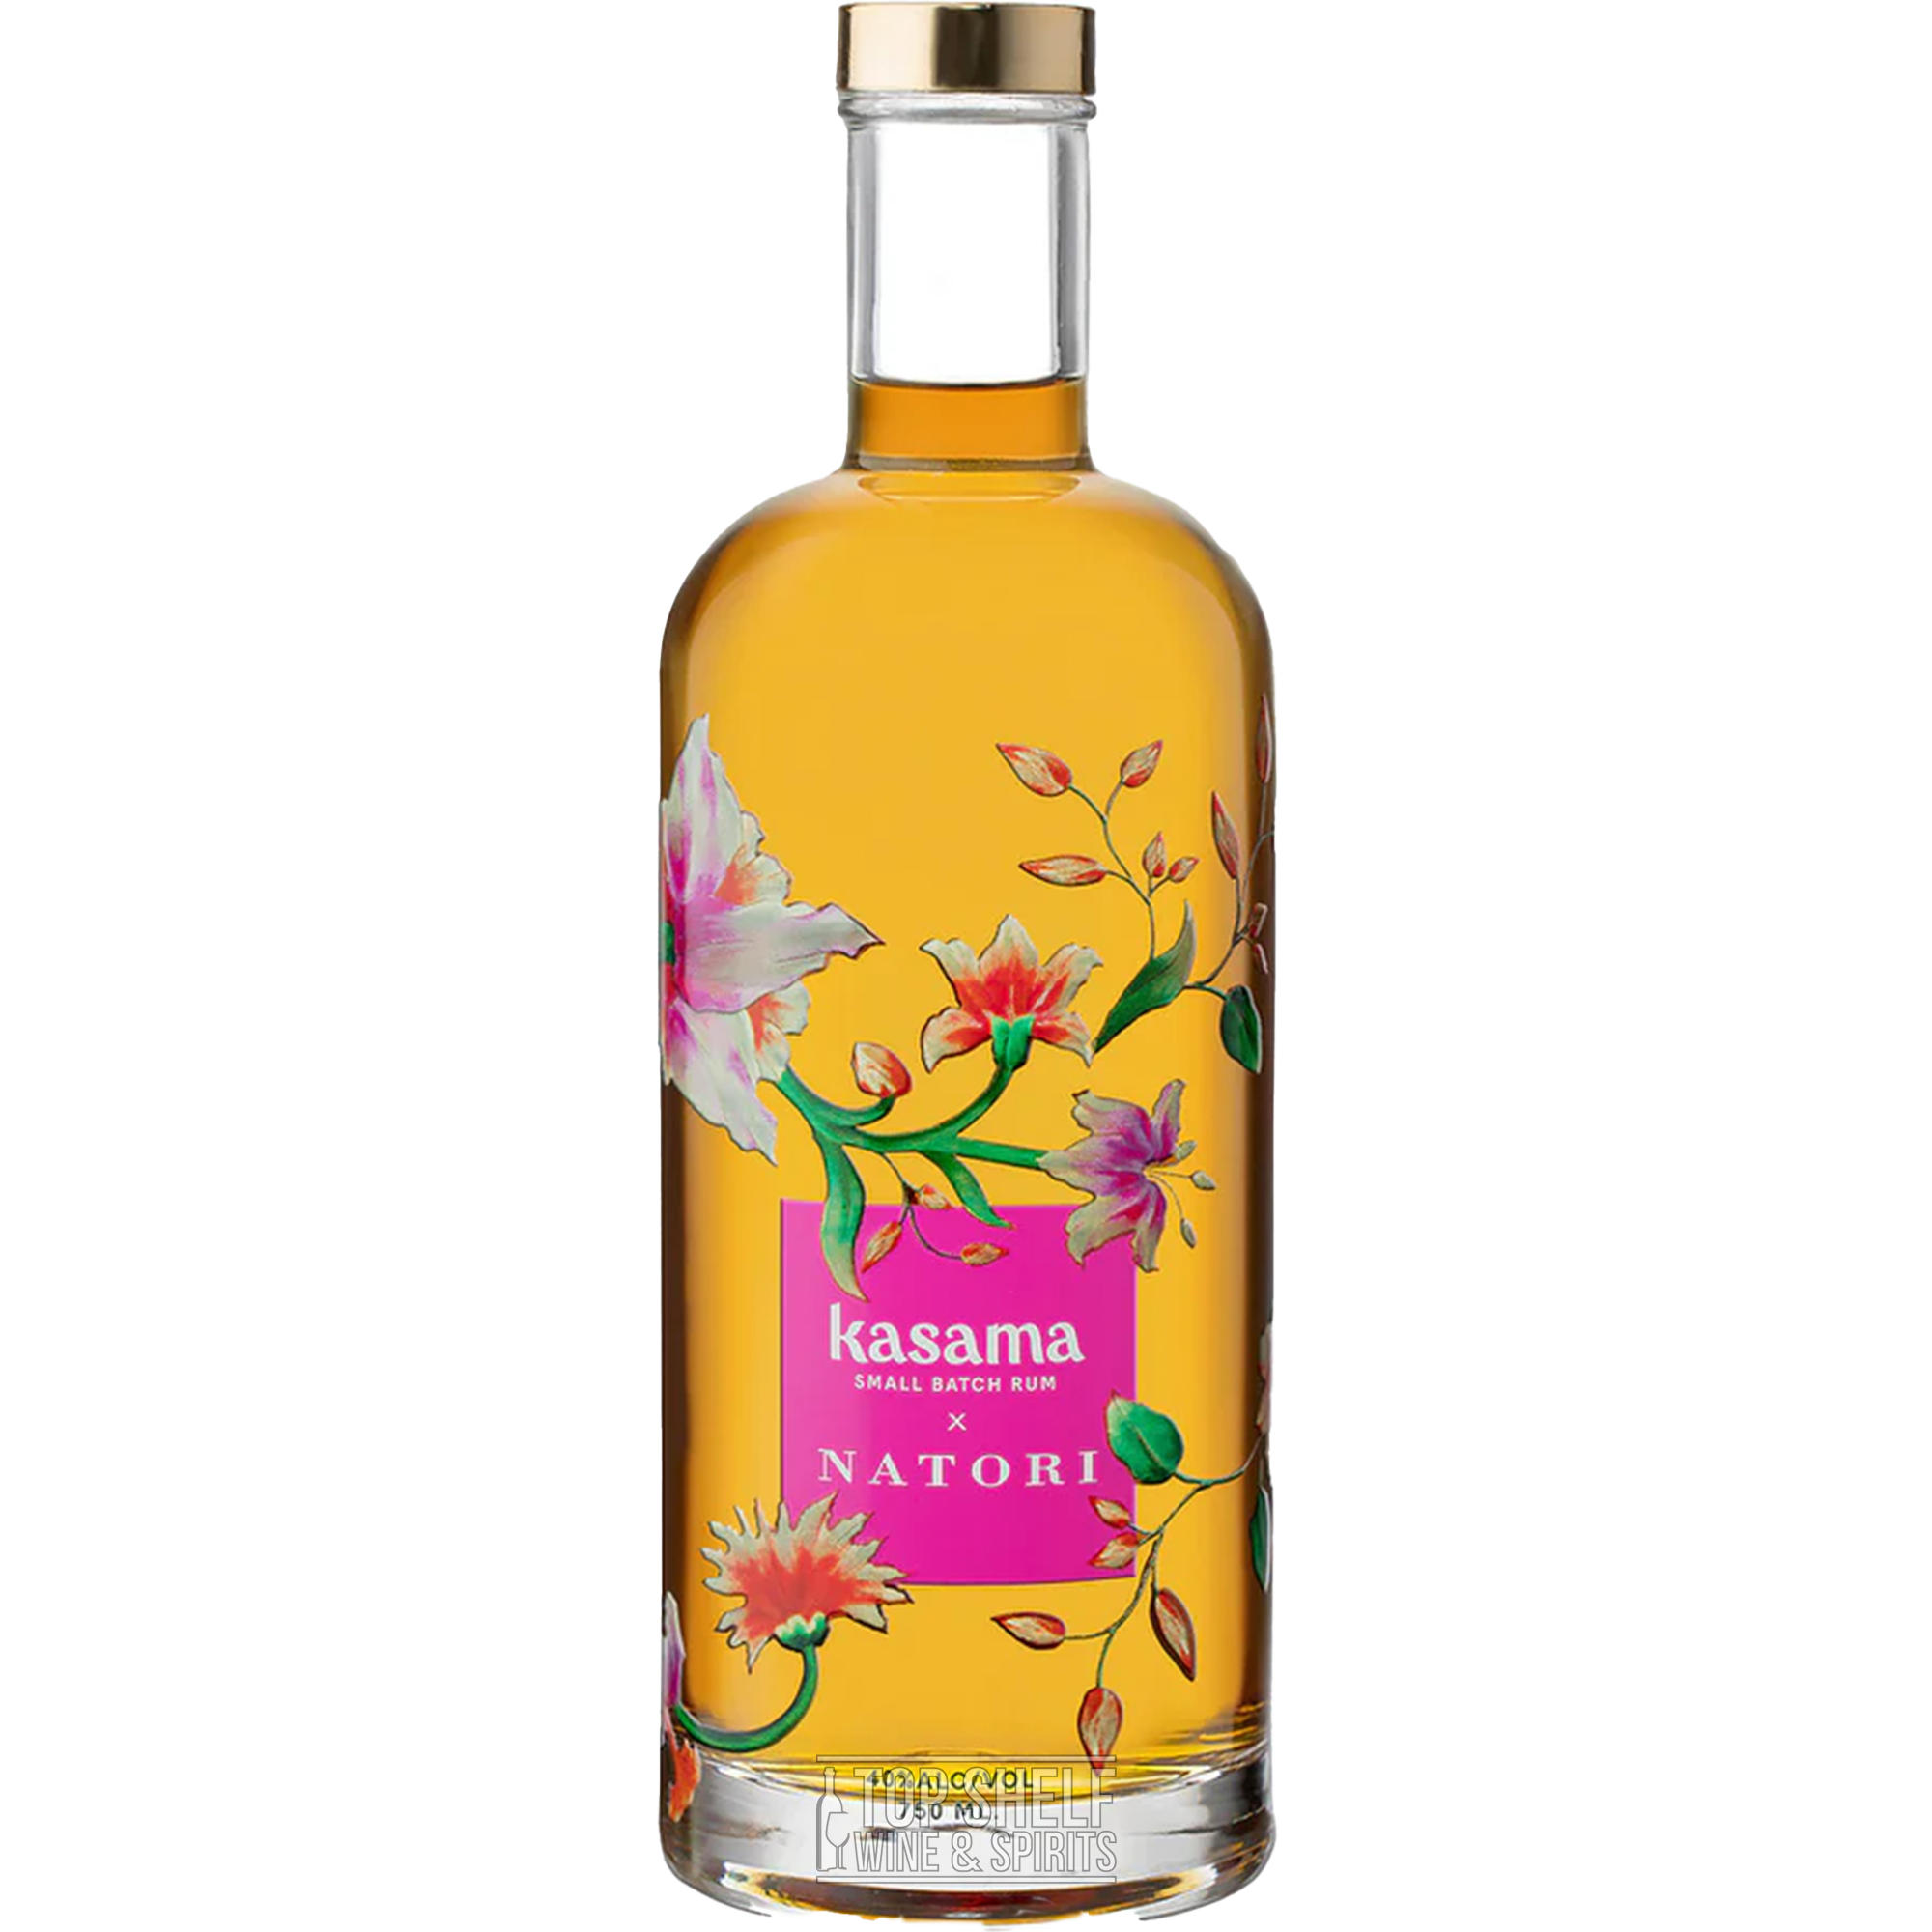 Kasama Natori Small Batch Limited Edition Rum